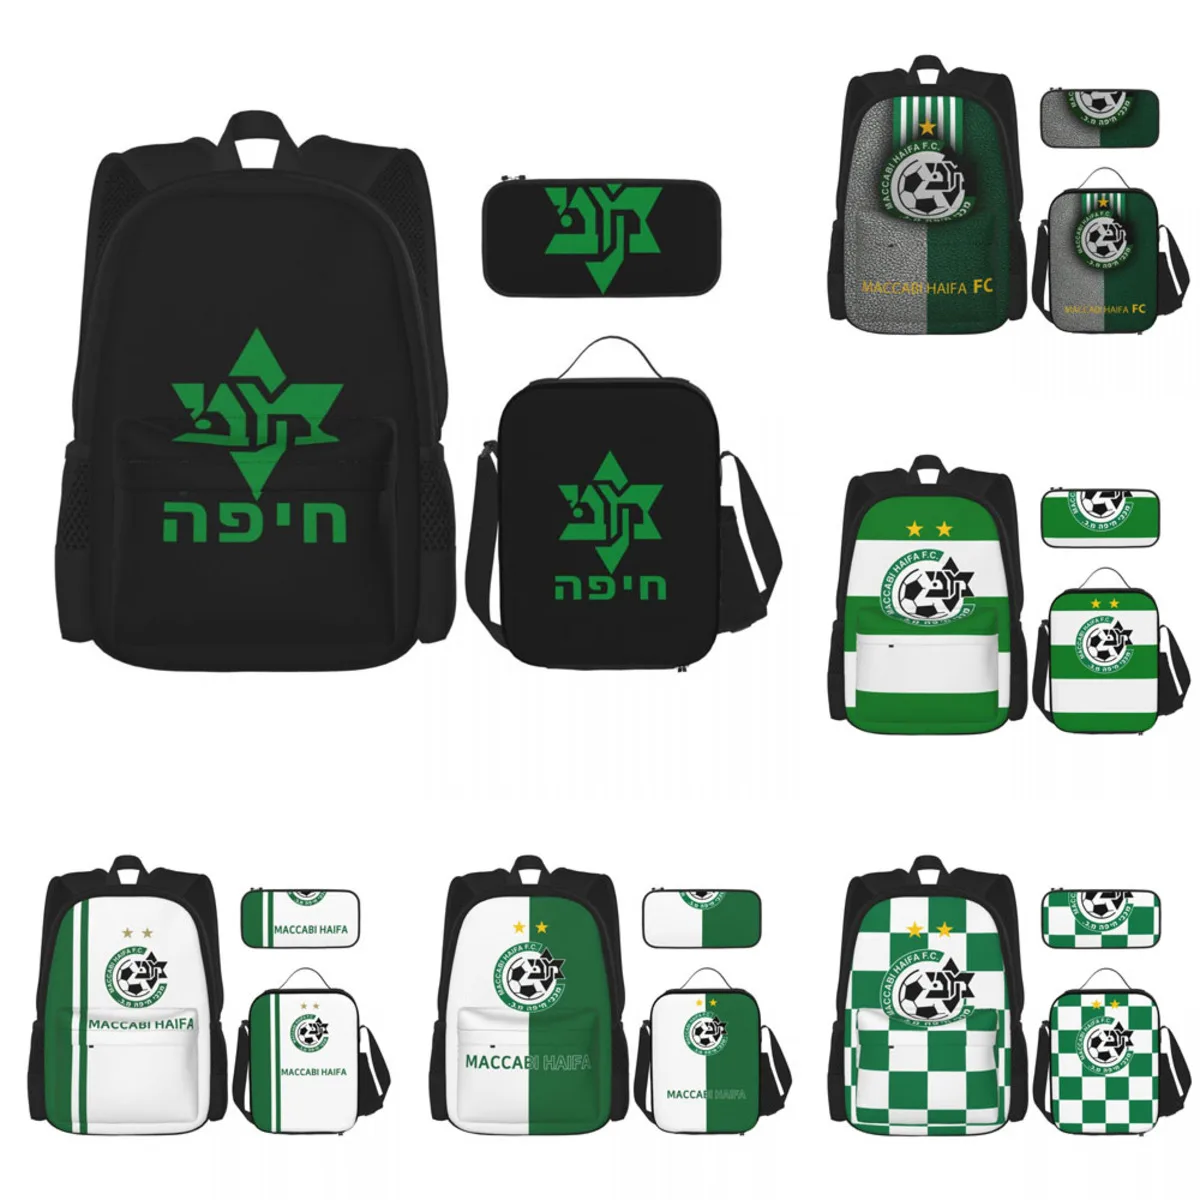 

Школьный рюкзак Maccabi Haifa из 3 предметов, школьная сумка с ланч-боксом и чехлом для карандашей, набор для мальчиков и девочек, один размер